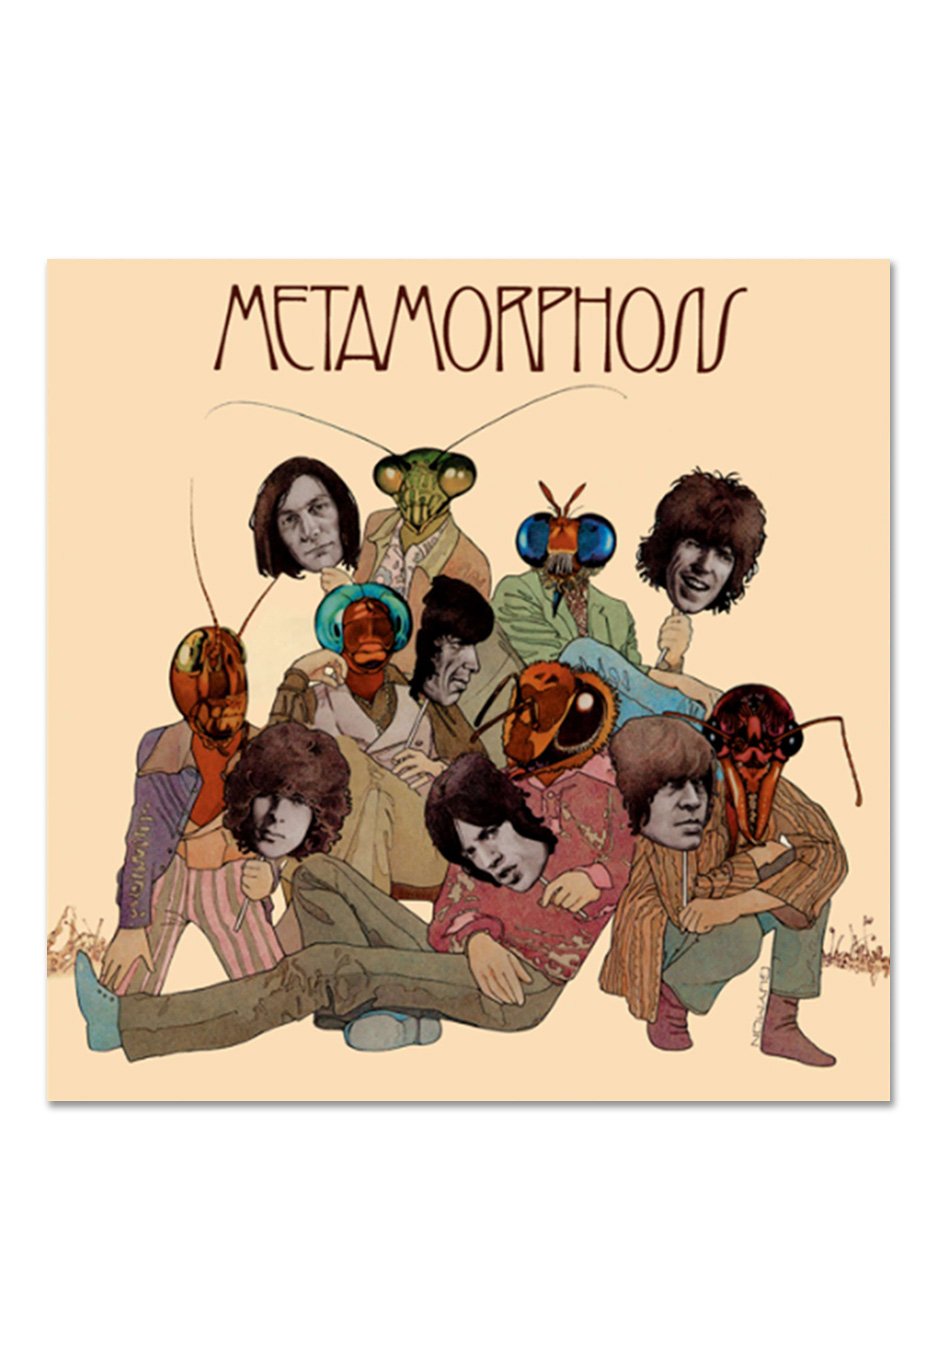 The Rolling Stones - Metamorphosis - Vinyl